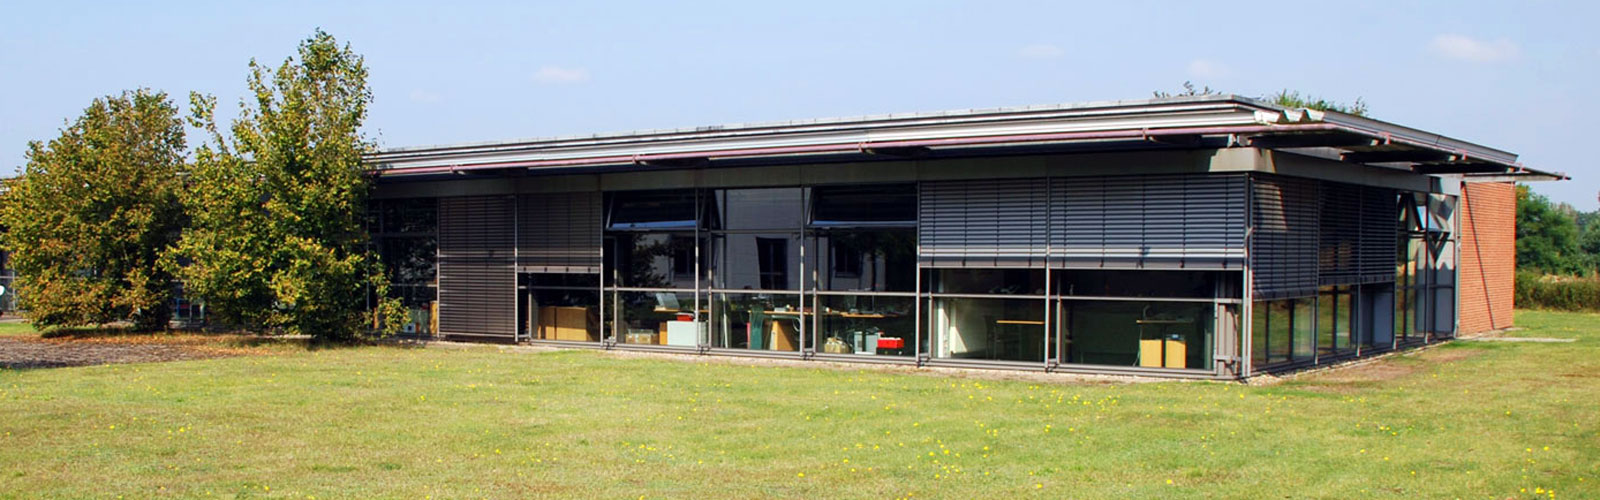 Firmengebäude RK-AHT mit Sitz in Bienenbüttel